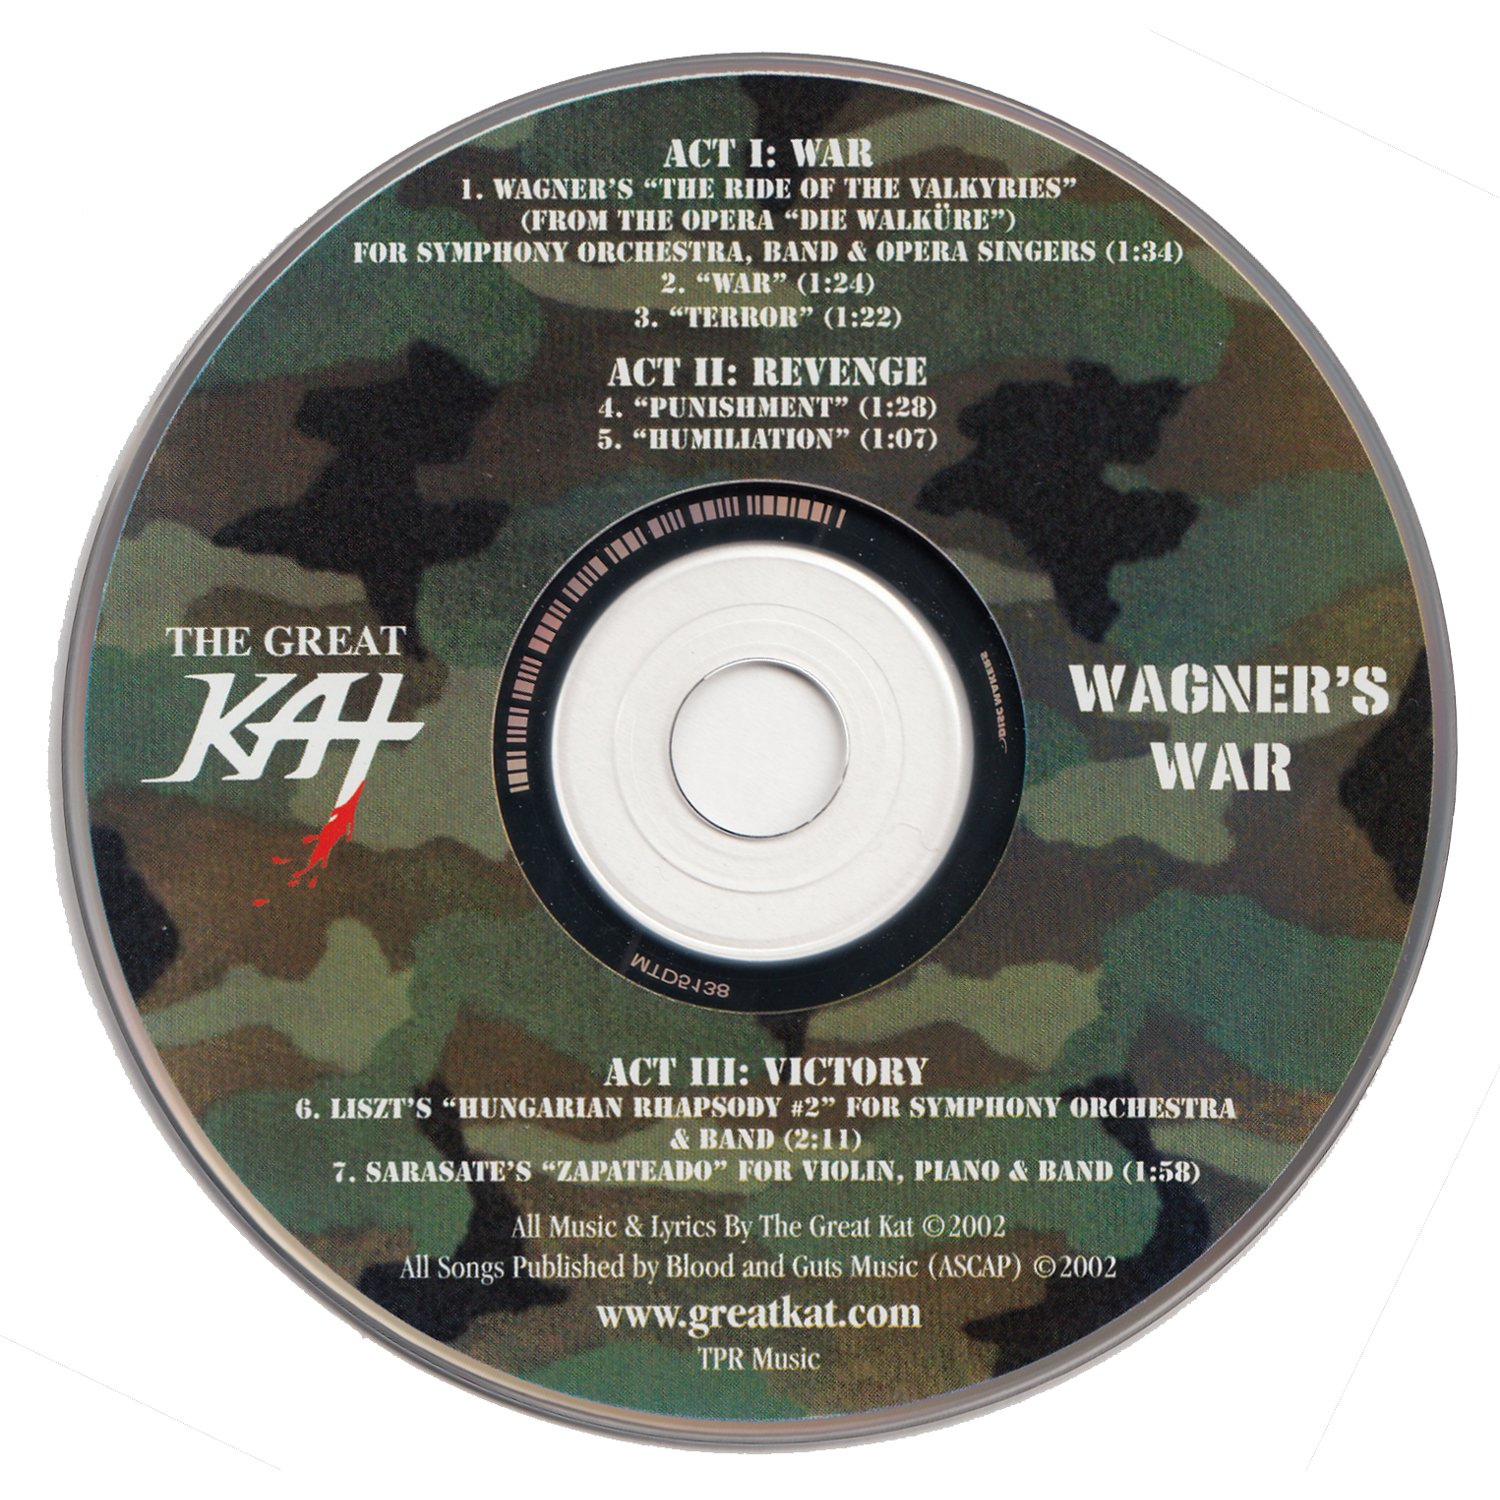 THE GREAT KAT'S "WAGNER'S WAR" CD PHOTOS!